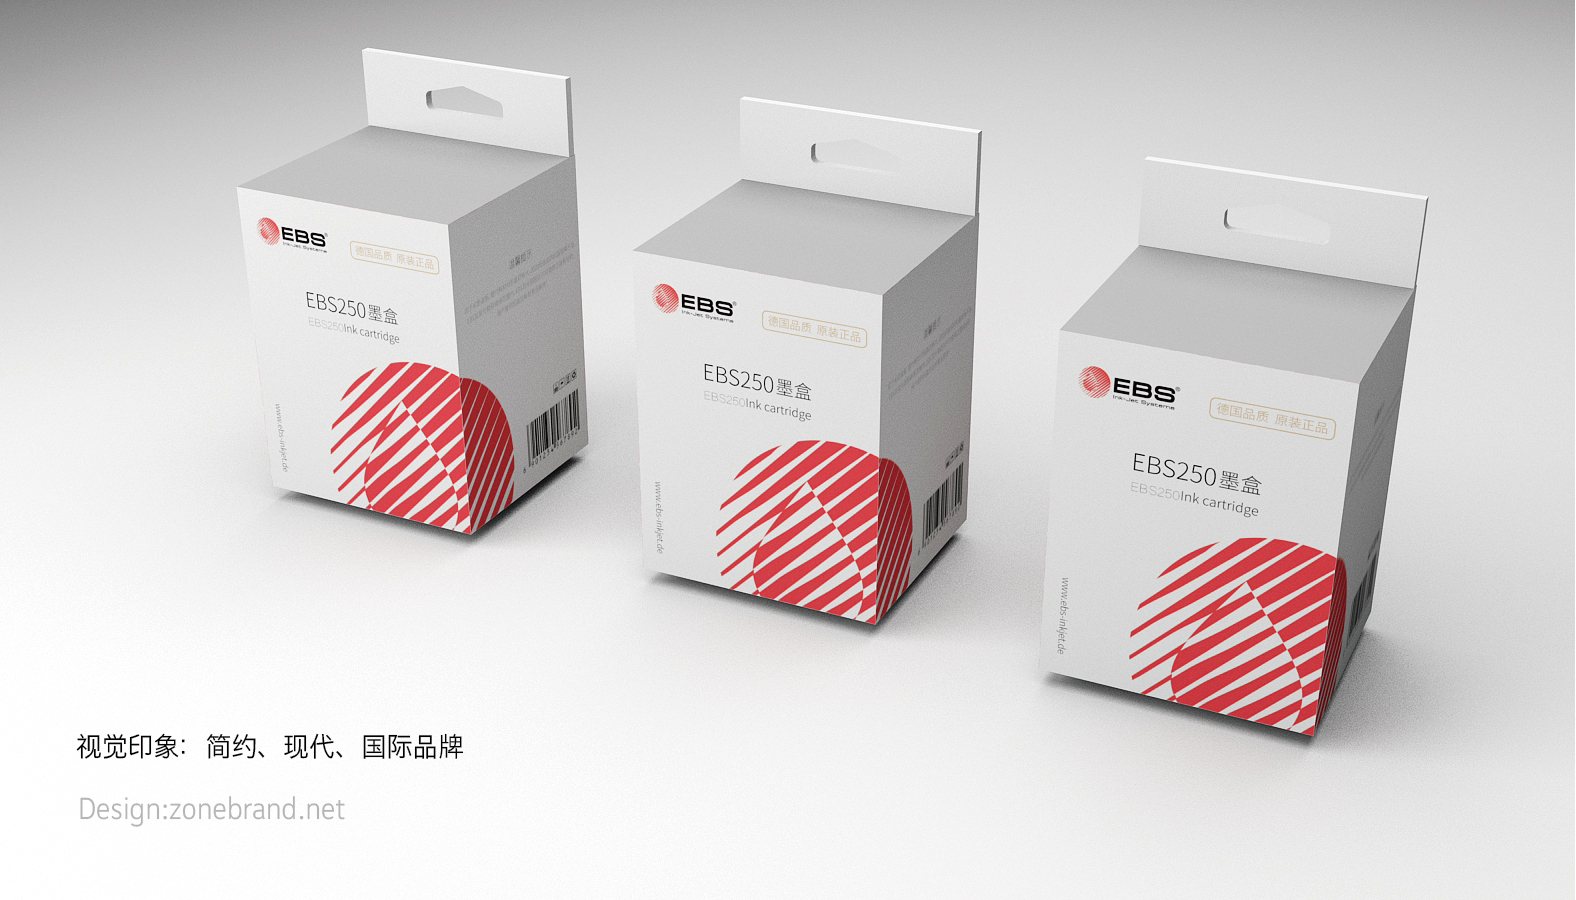 深圳包装设计公司深圳包装设计案例电子科技产品包装设计